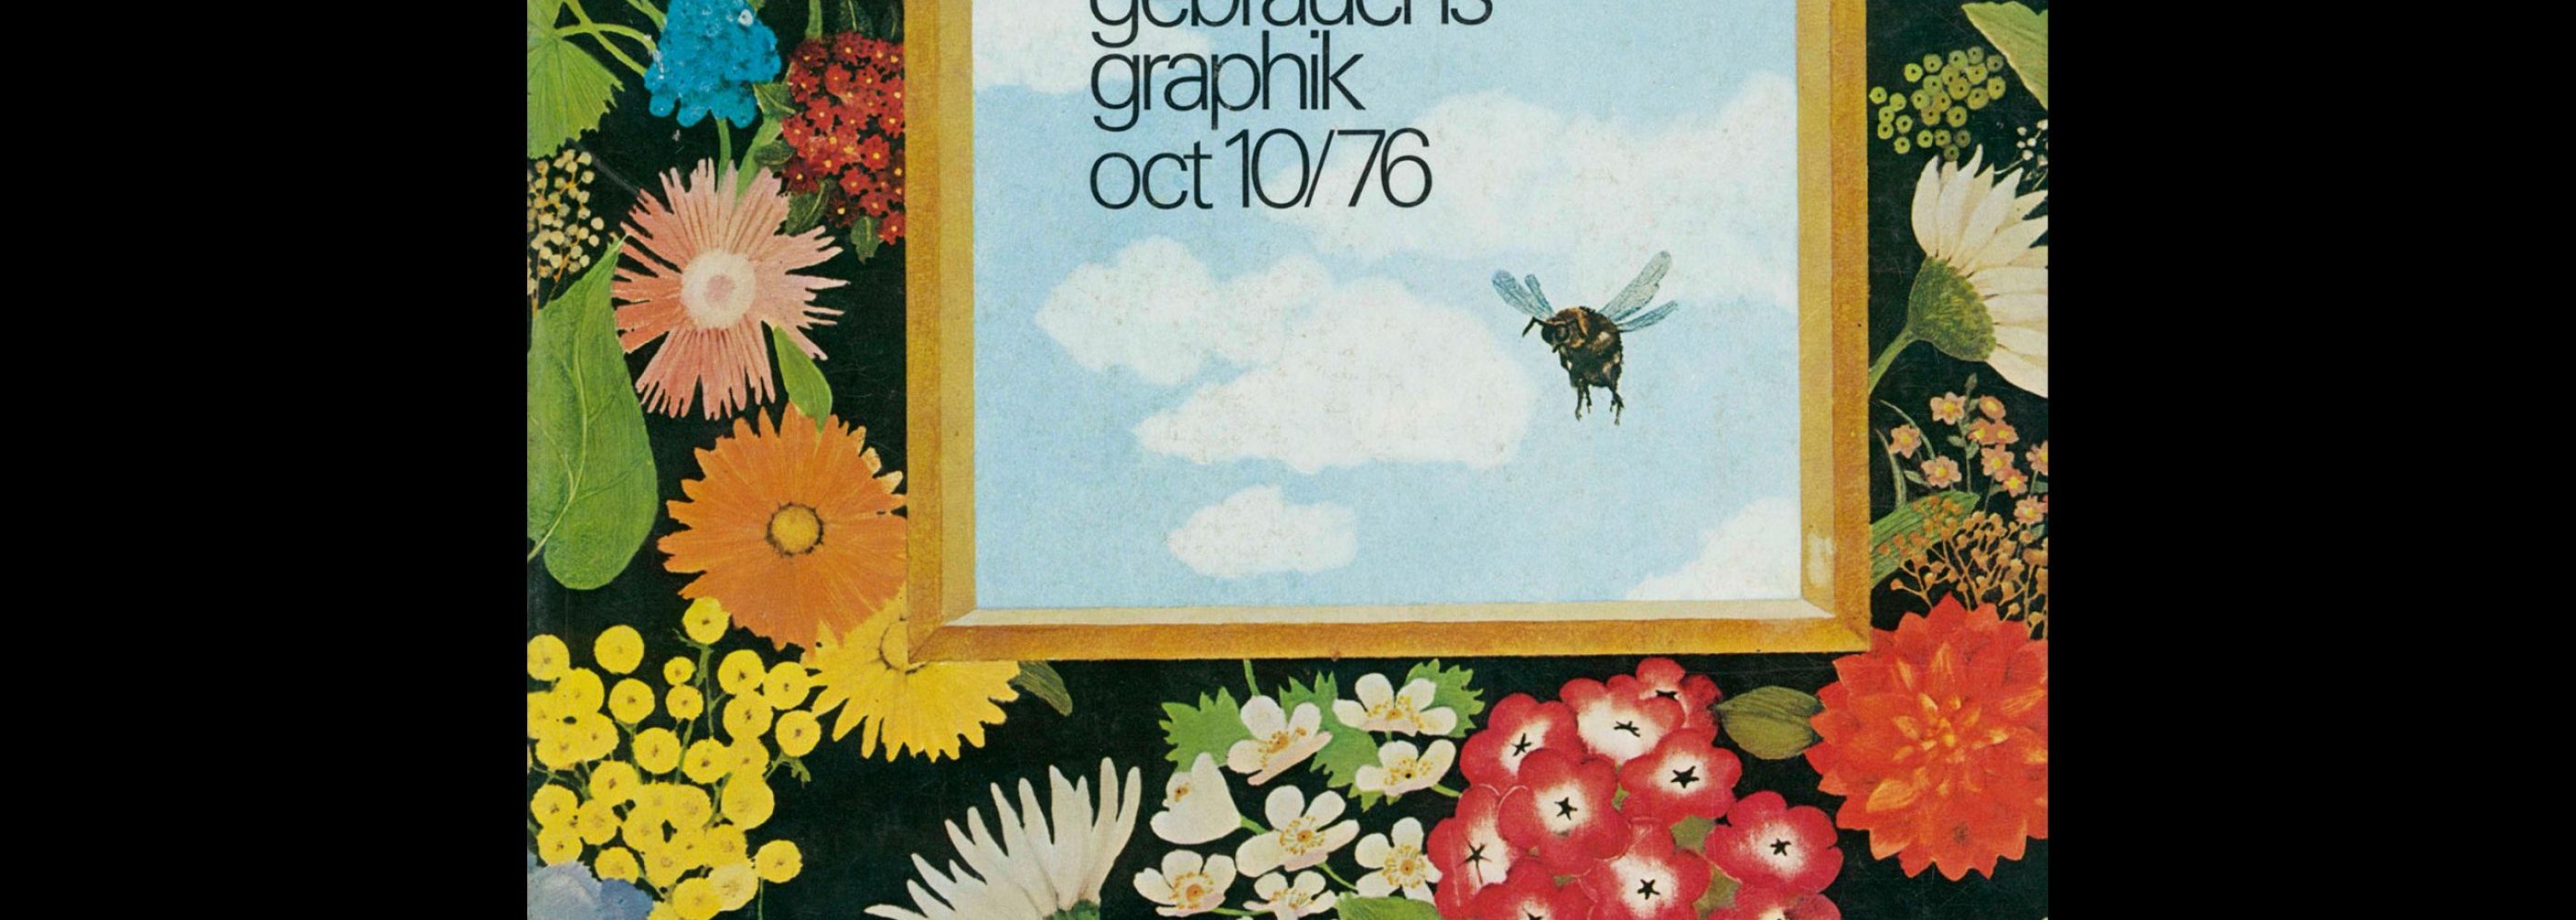 Novum Gebrauchsgraphik, 10, 1976. Cover design by Karin Blume